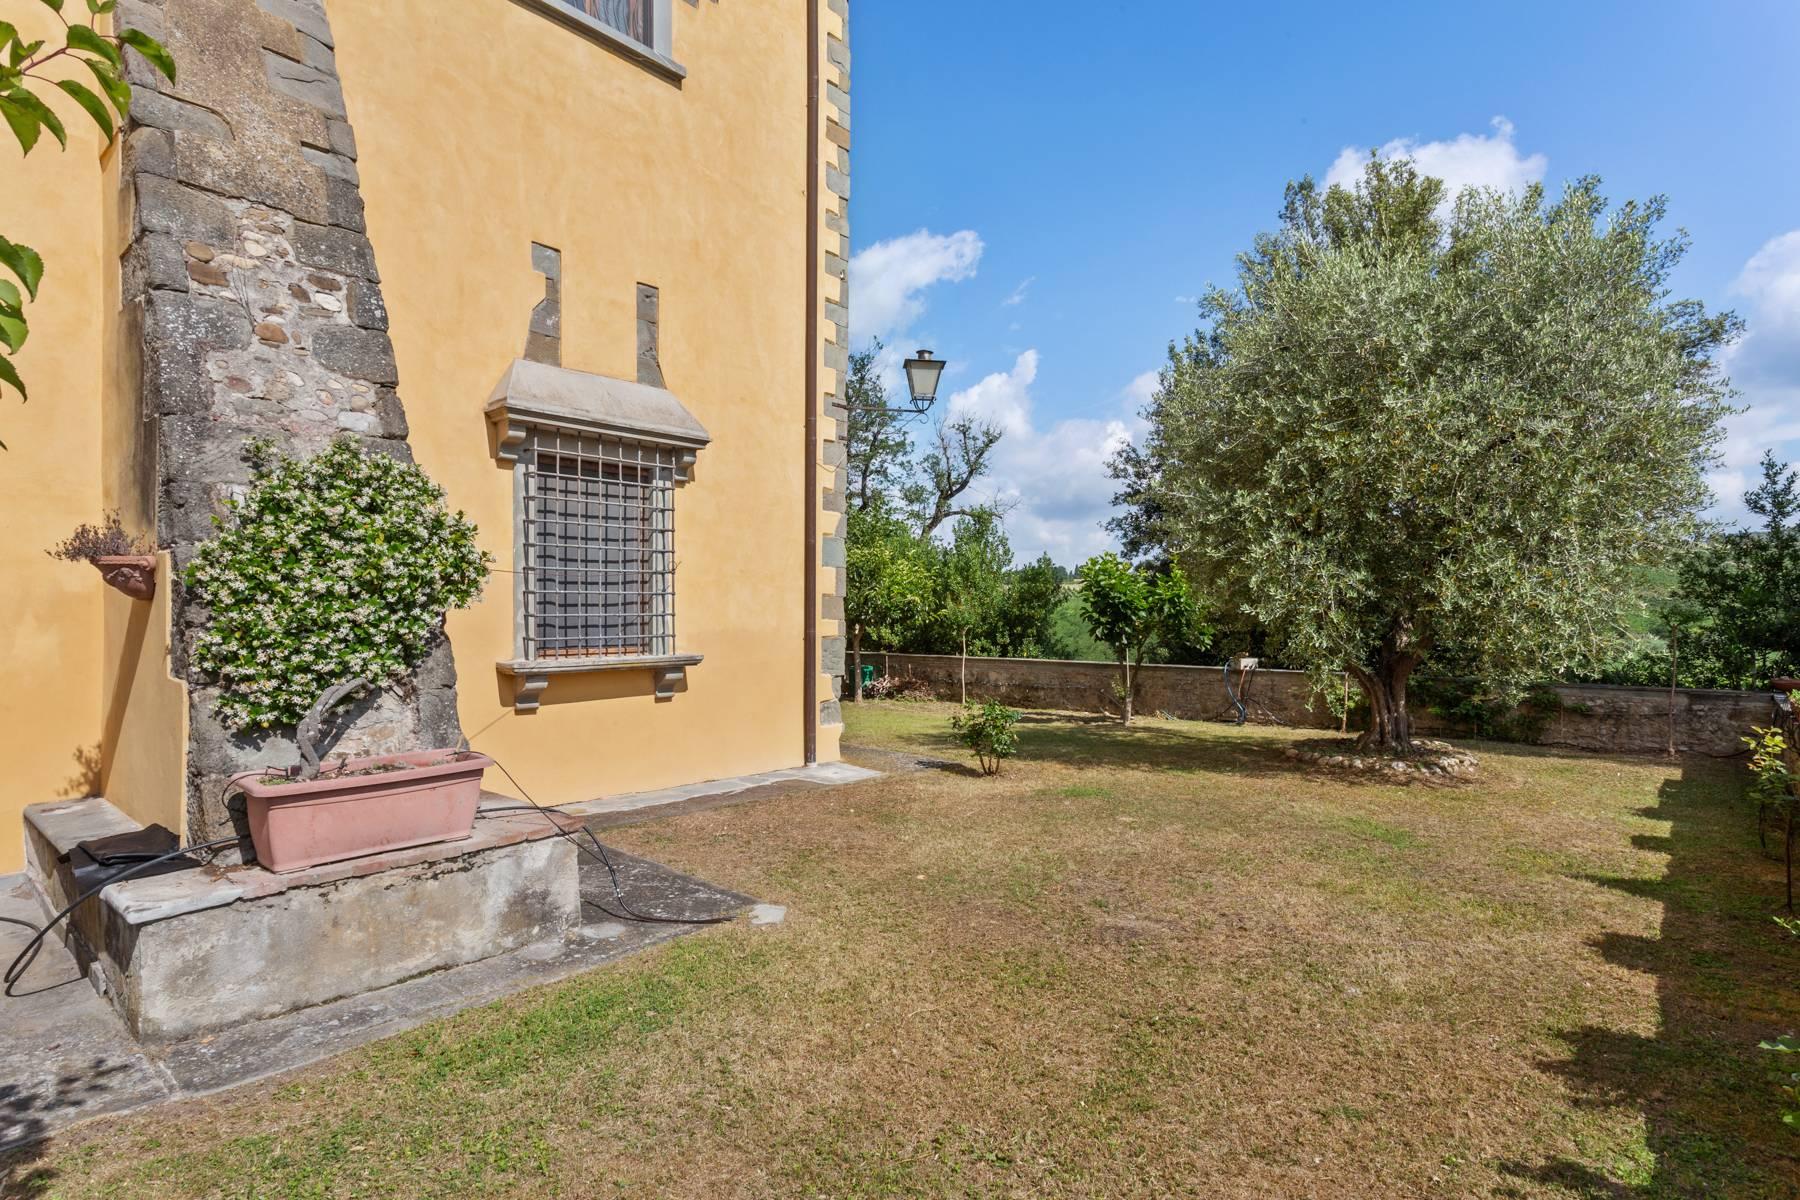 Splendido appartamento in villa storica del XVI secolo con giardino - 2